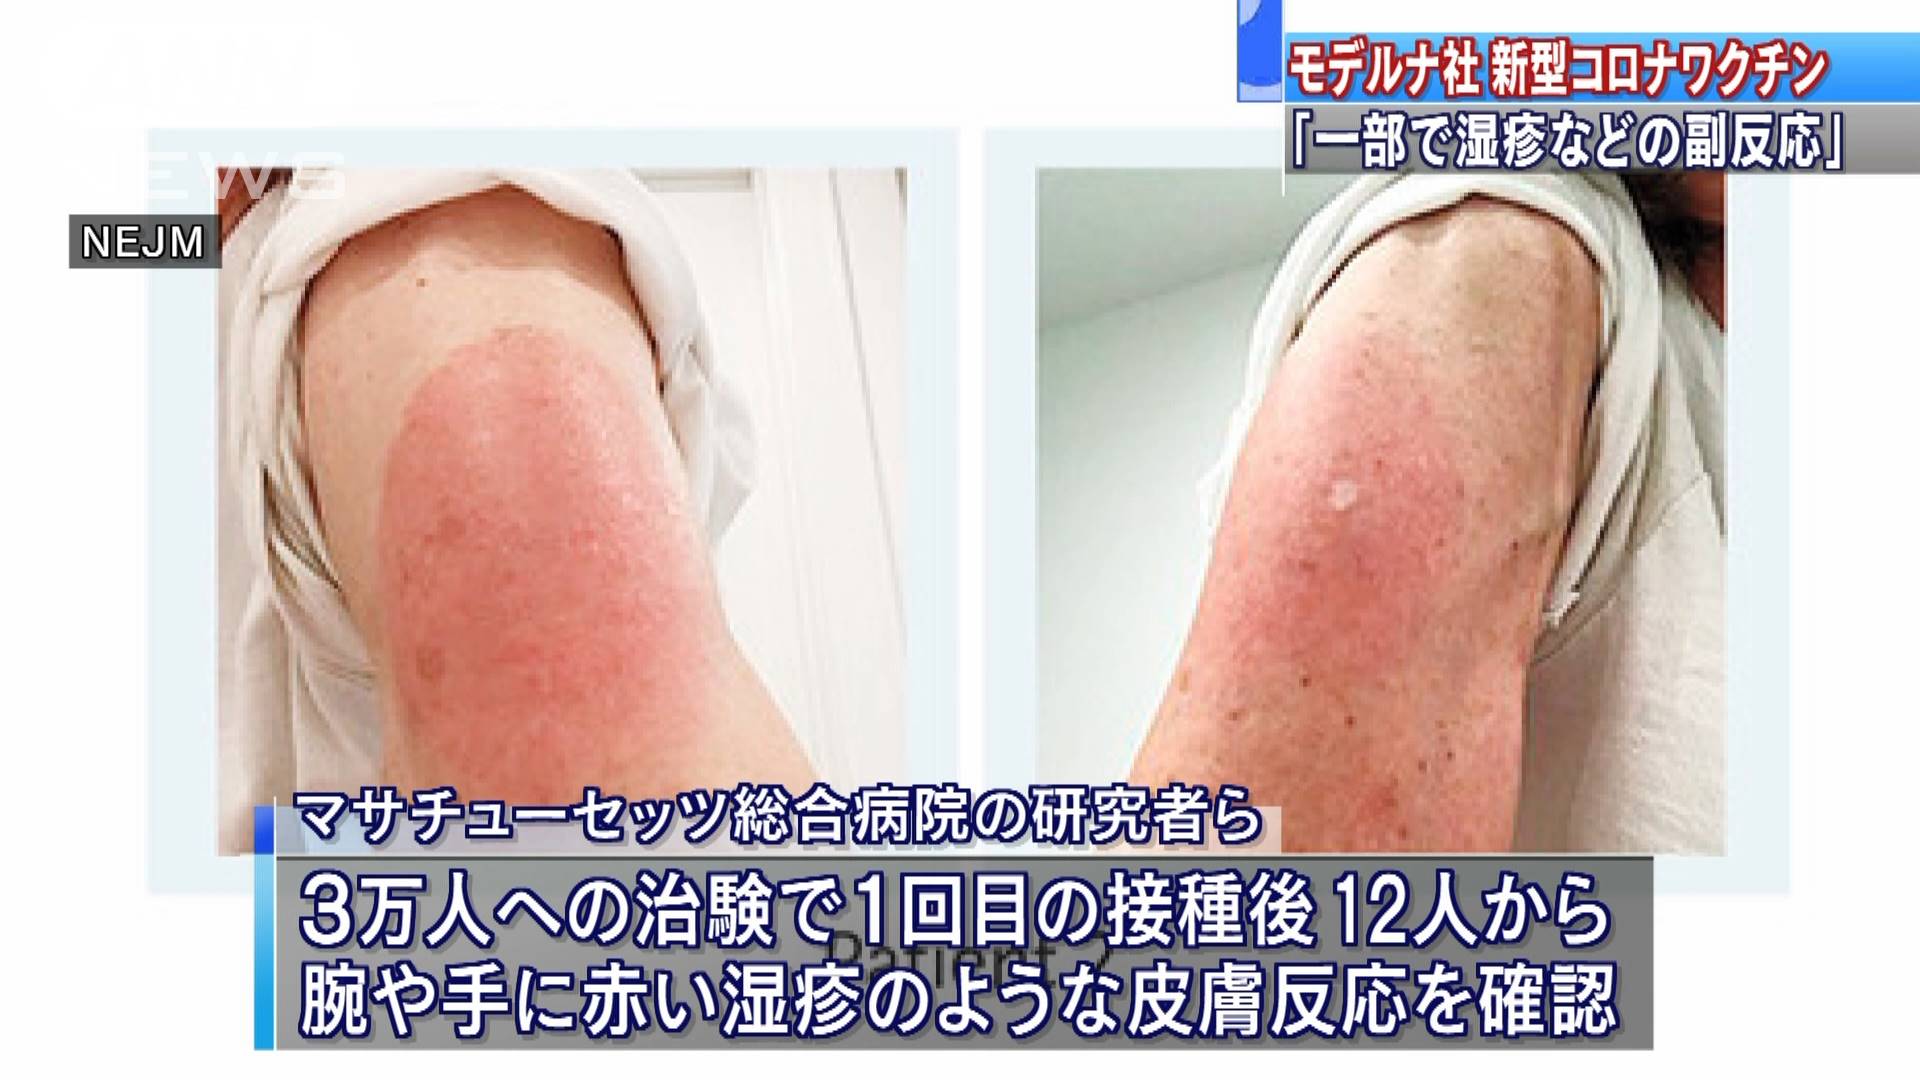 モデルナ社ワクチン 一部で 湿疹 のような反応 テレ朝news テレビ朝日のニュースサイト